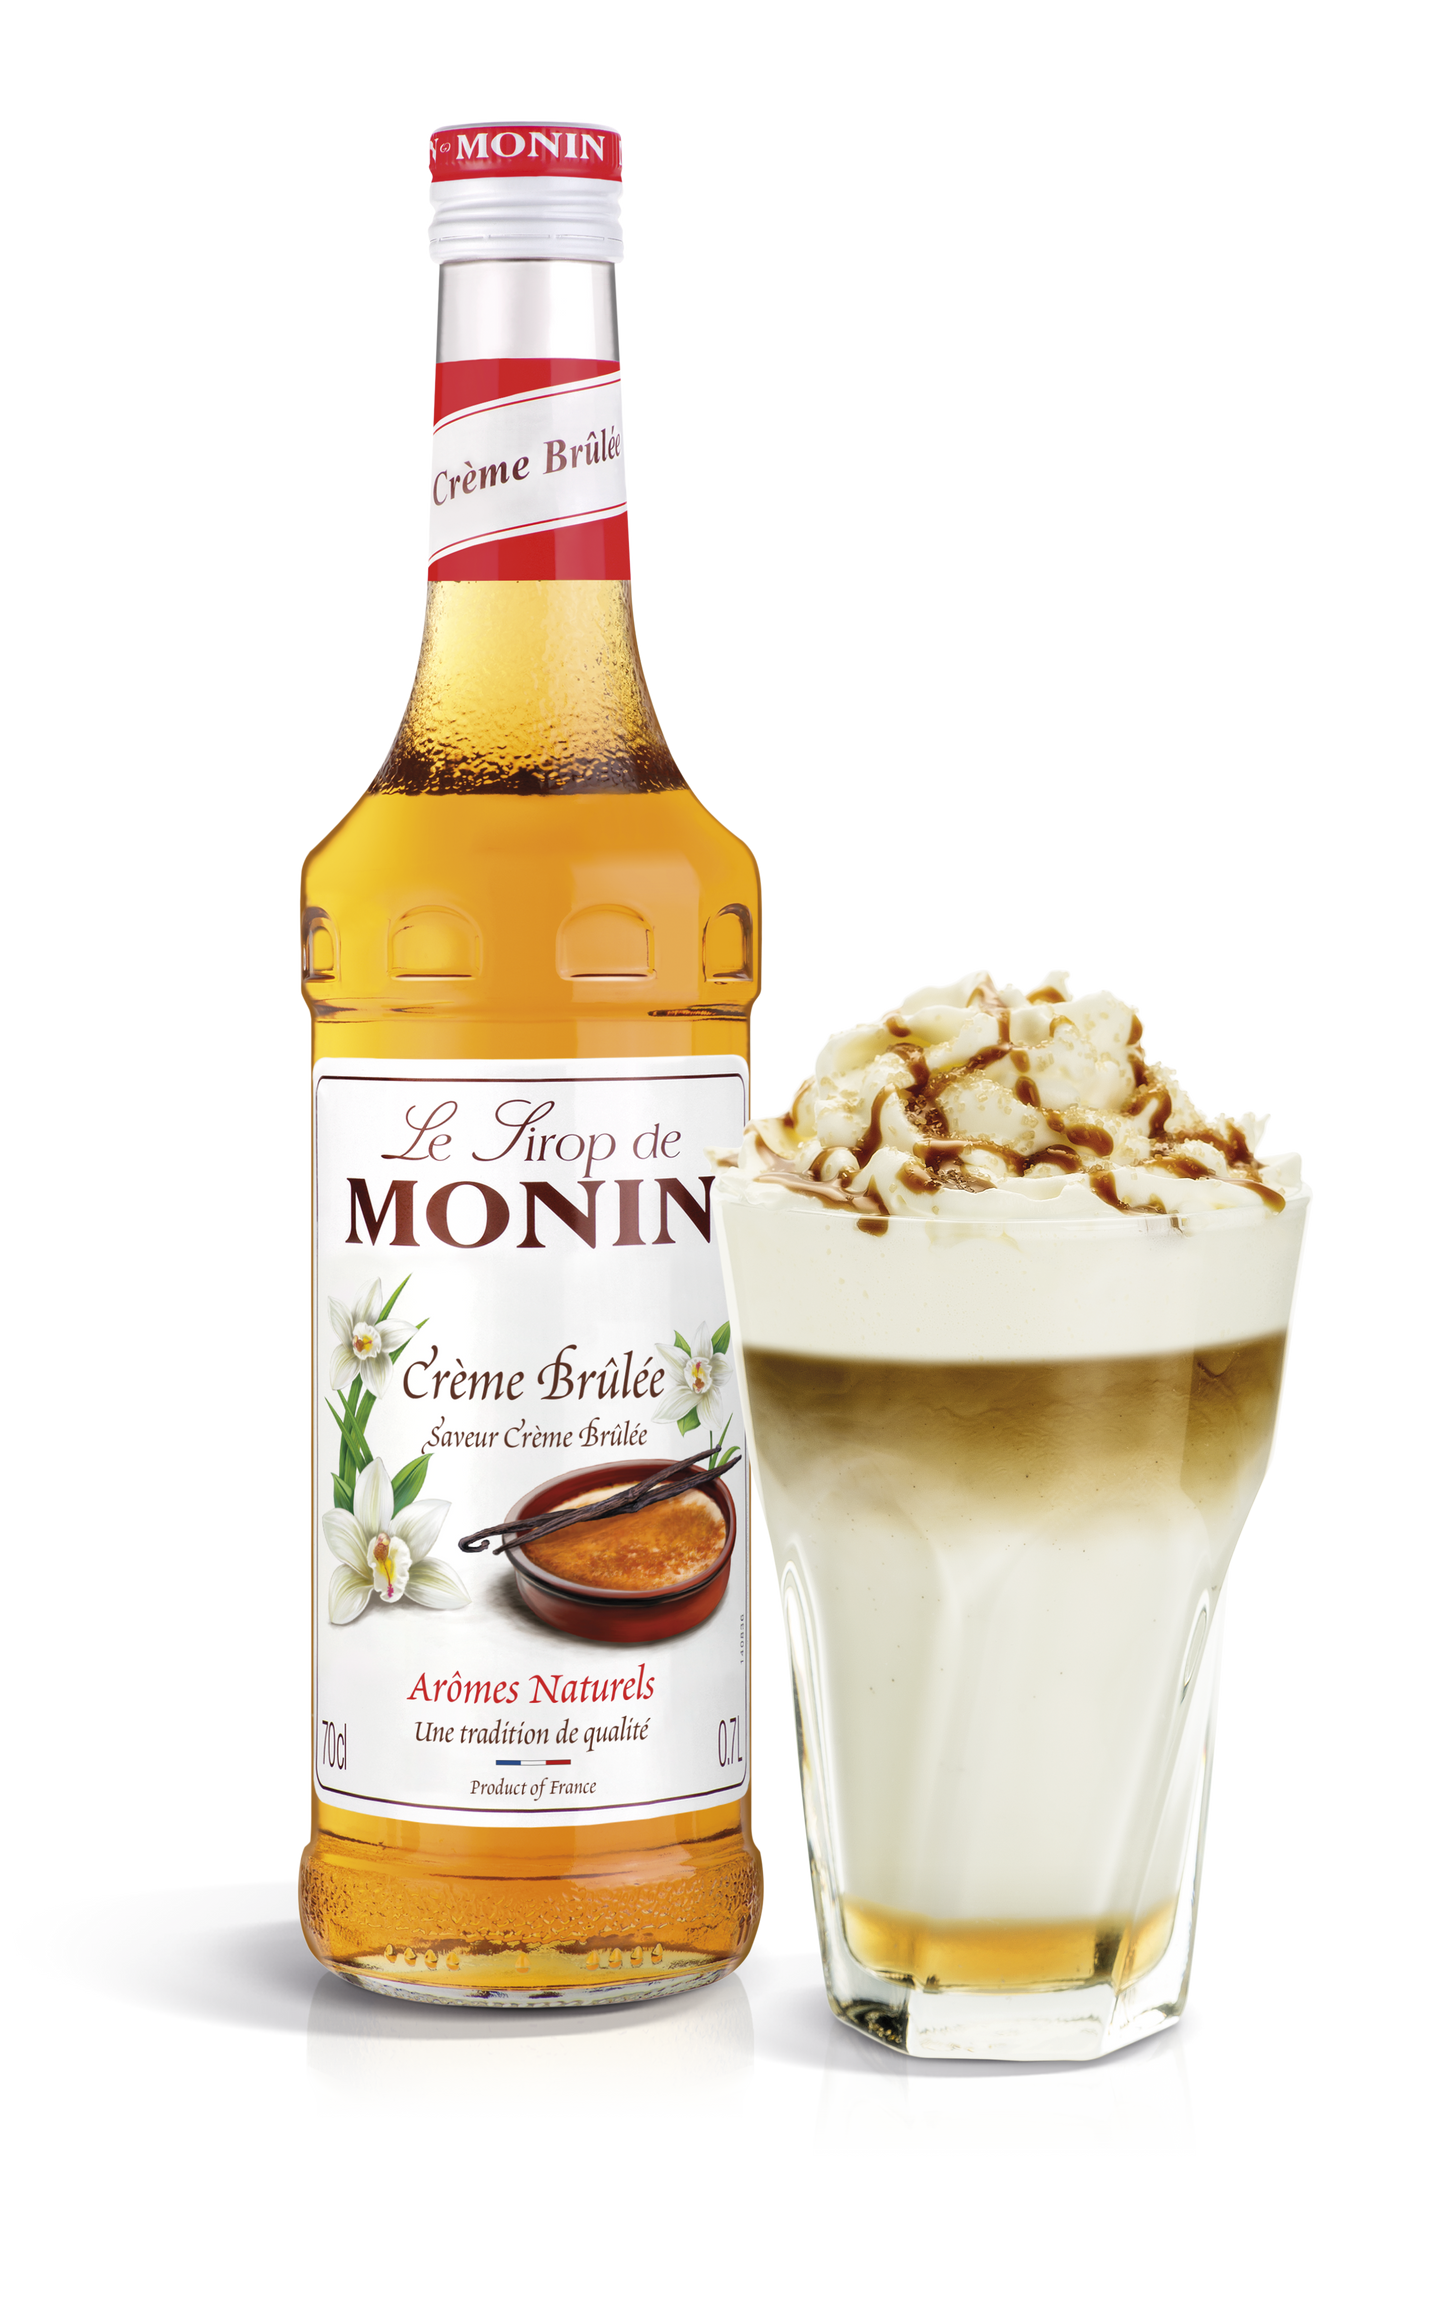 MONIN Crème Brulee Syrup 70cl